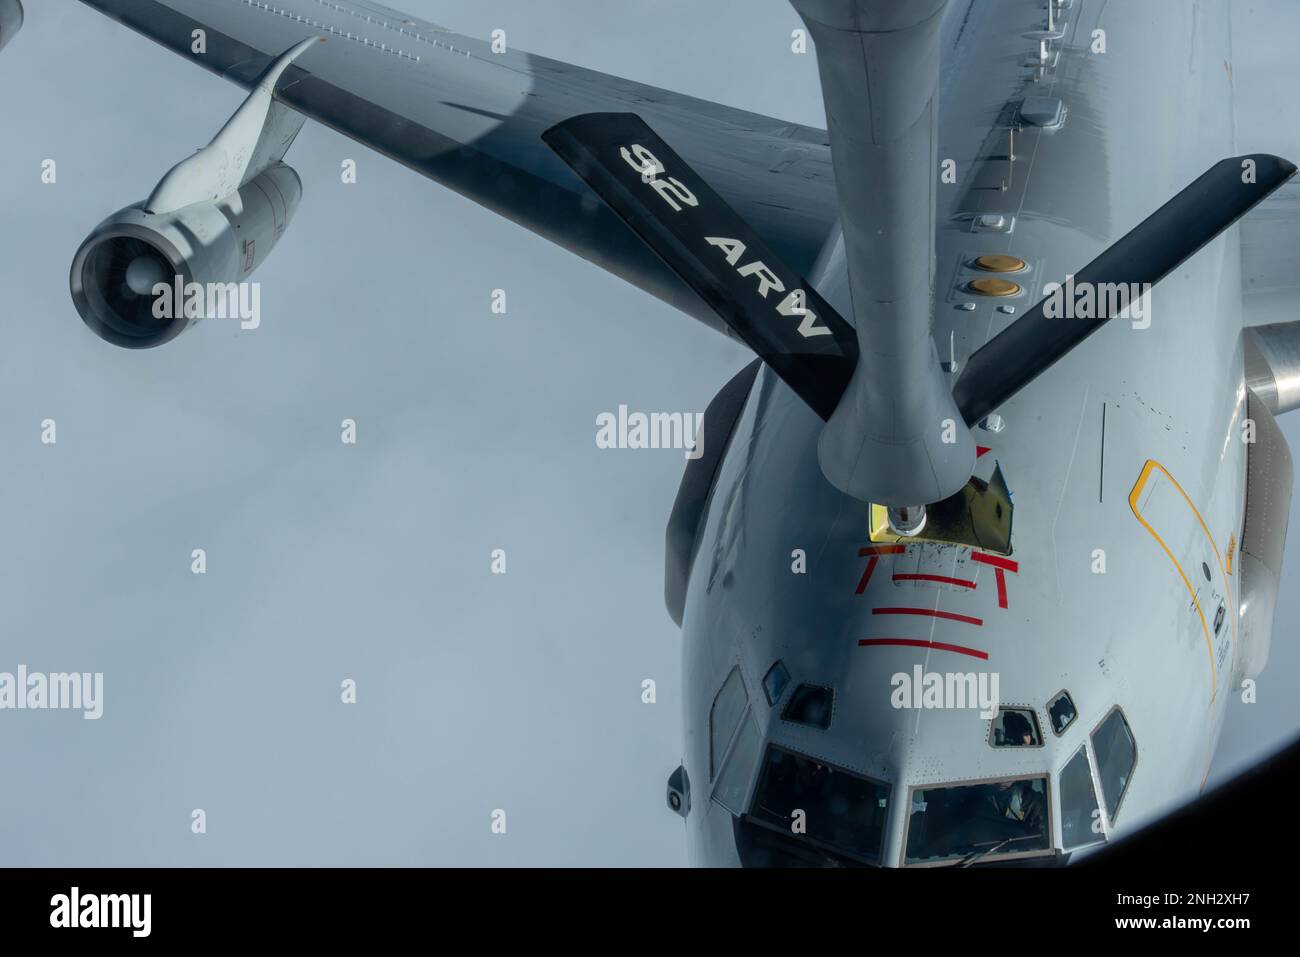 Ein KC-135 Stratotanker, der dem Luftwaffenstützpunkt Fairchild 92., Washington, zugeteilt wurde, betankt ein Flugzeug des Typs E-3 Airborne Warning and Control System (AWACS), das der NATO-Luftwaffenbasis Geilenkirchen, Deutschland, am 8. Dezember 2022 zugeteilt wurde. Ein im NATO-Luftraum fliegendes E-3 AWACS-Luftfahrzeug kann zwischen Zielen und Bodenreflexionen unterscheiden und kann Frühwarnungen für tief- oder hochfliegende Luftfahrzeuge geben, die über dem Gebiet eines potenziellen Angreifers betrieben werden. Stockfoto